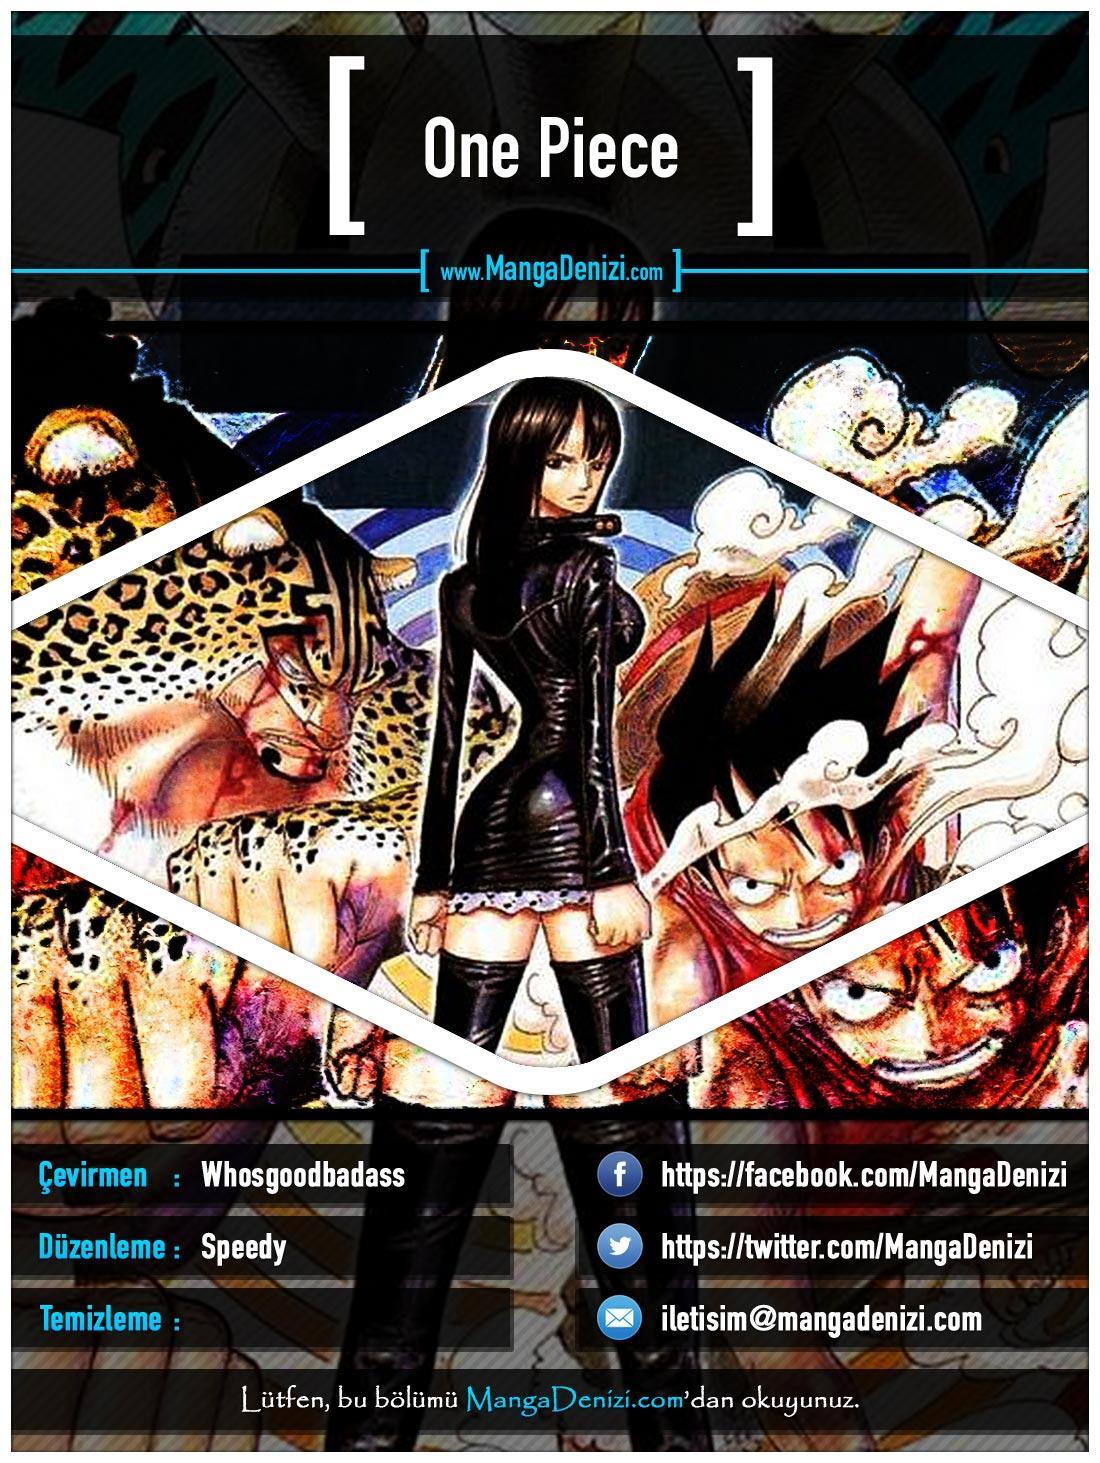 One Piece [Renkli] mangasının 0415 bölümünün 1. sayfasını okuyorsunuz.